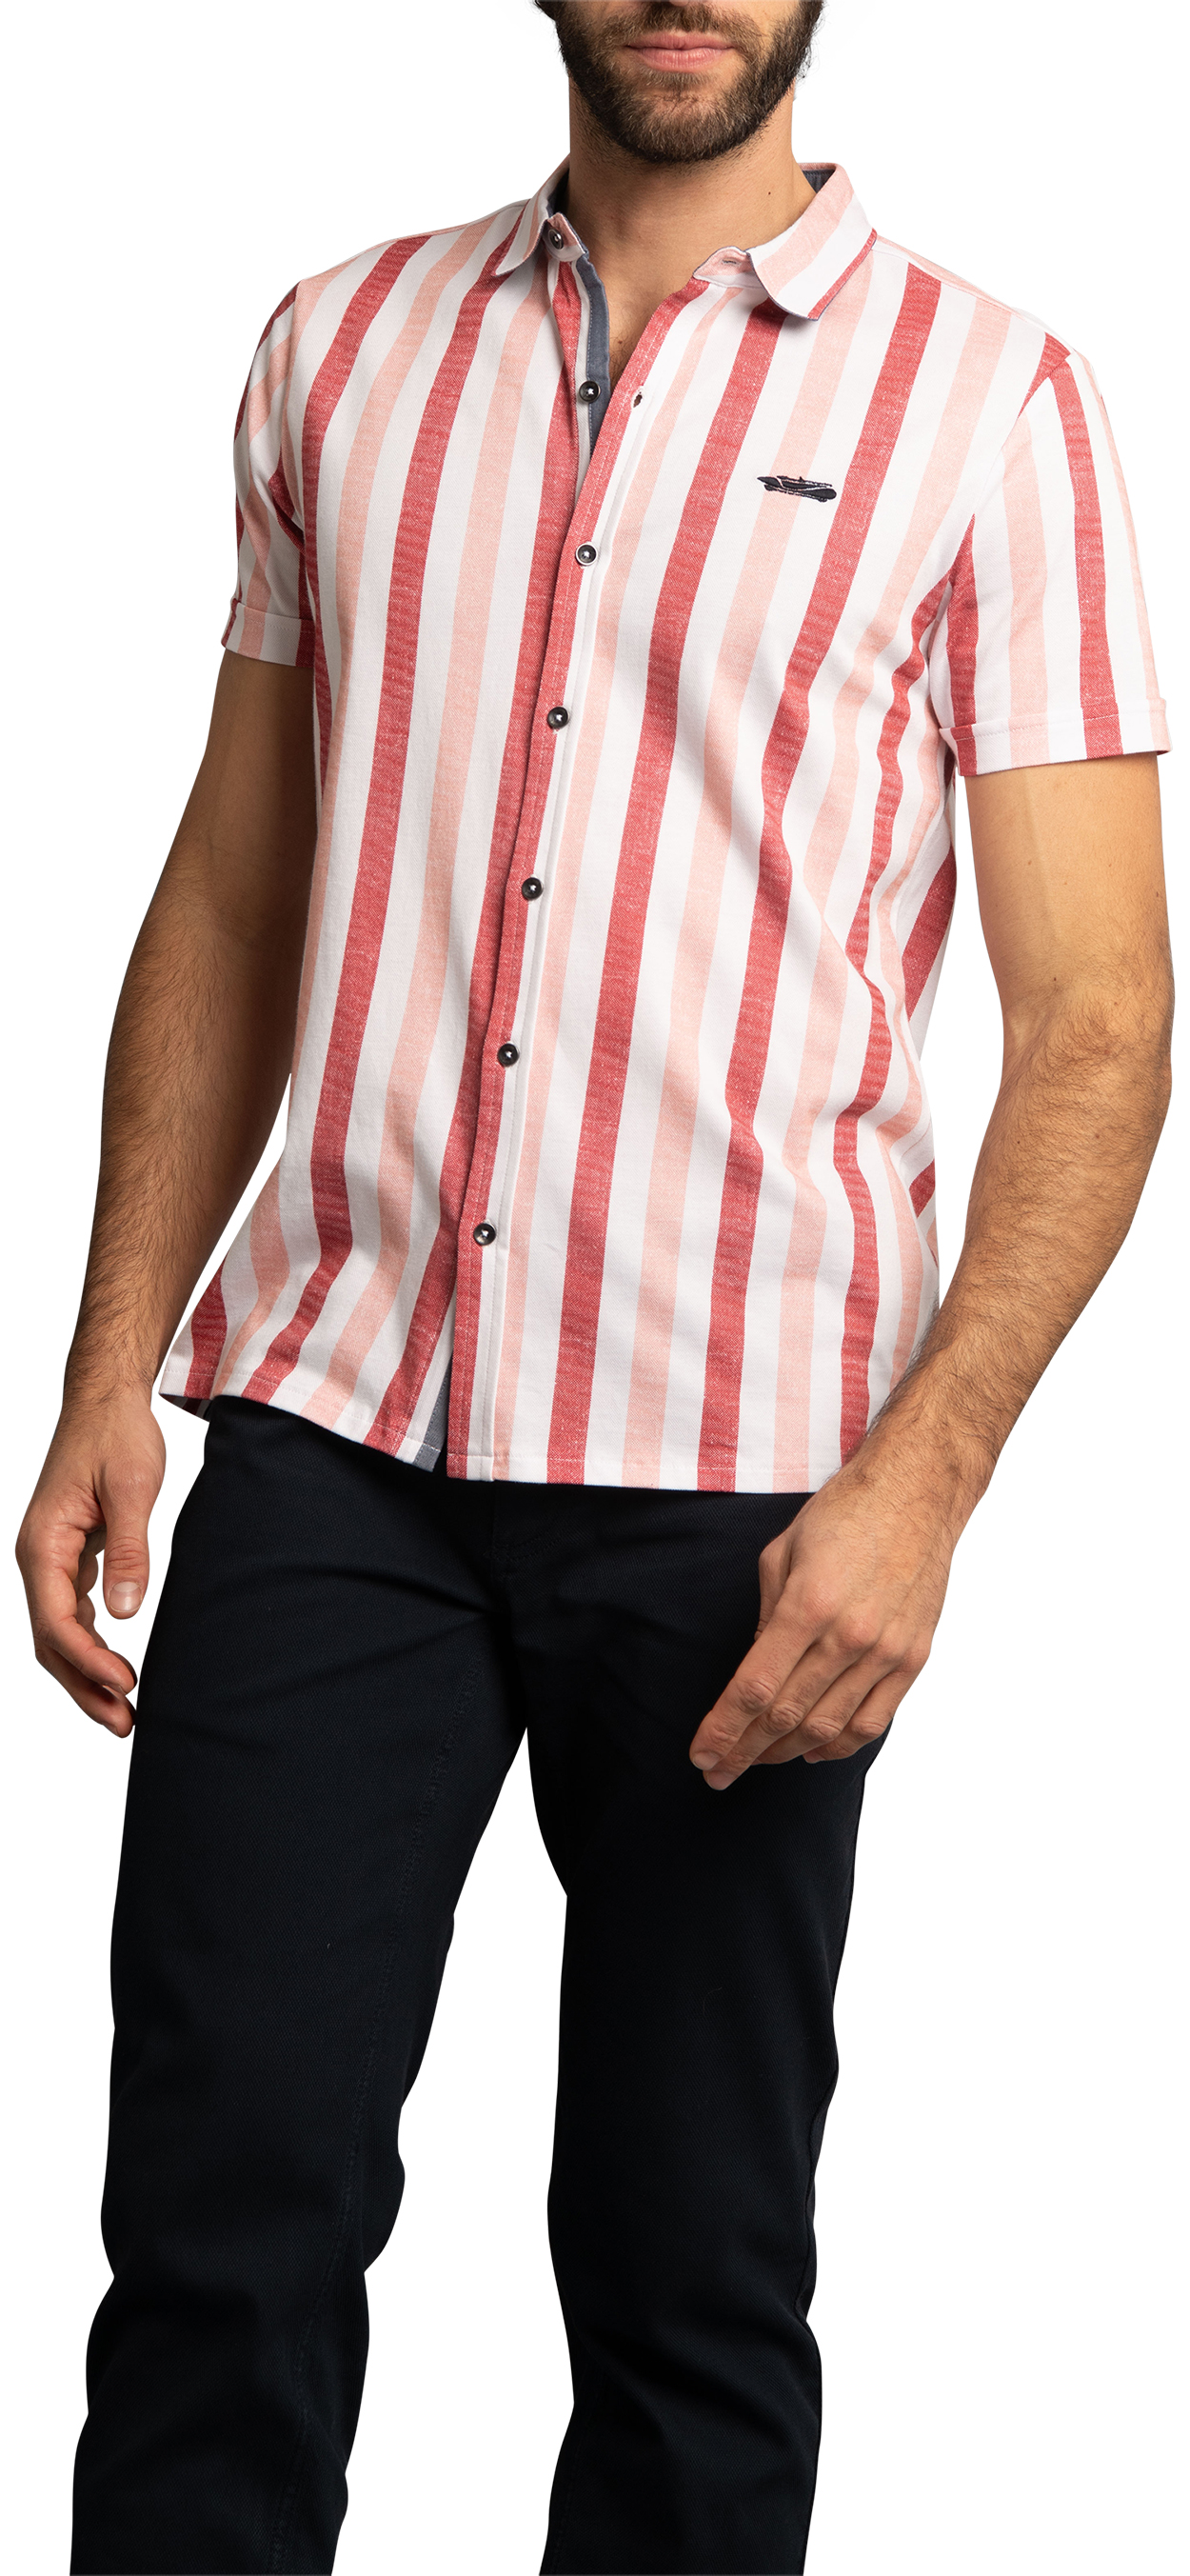 Chemise Delahaye coton avec manches courtes et col boutonné rose rayée